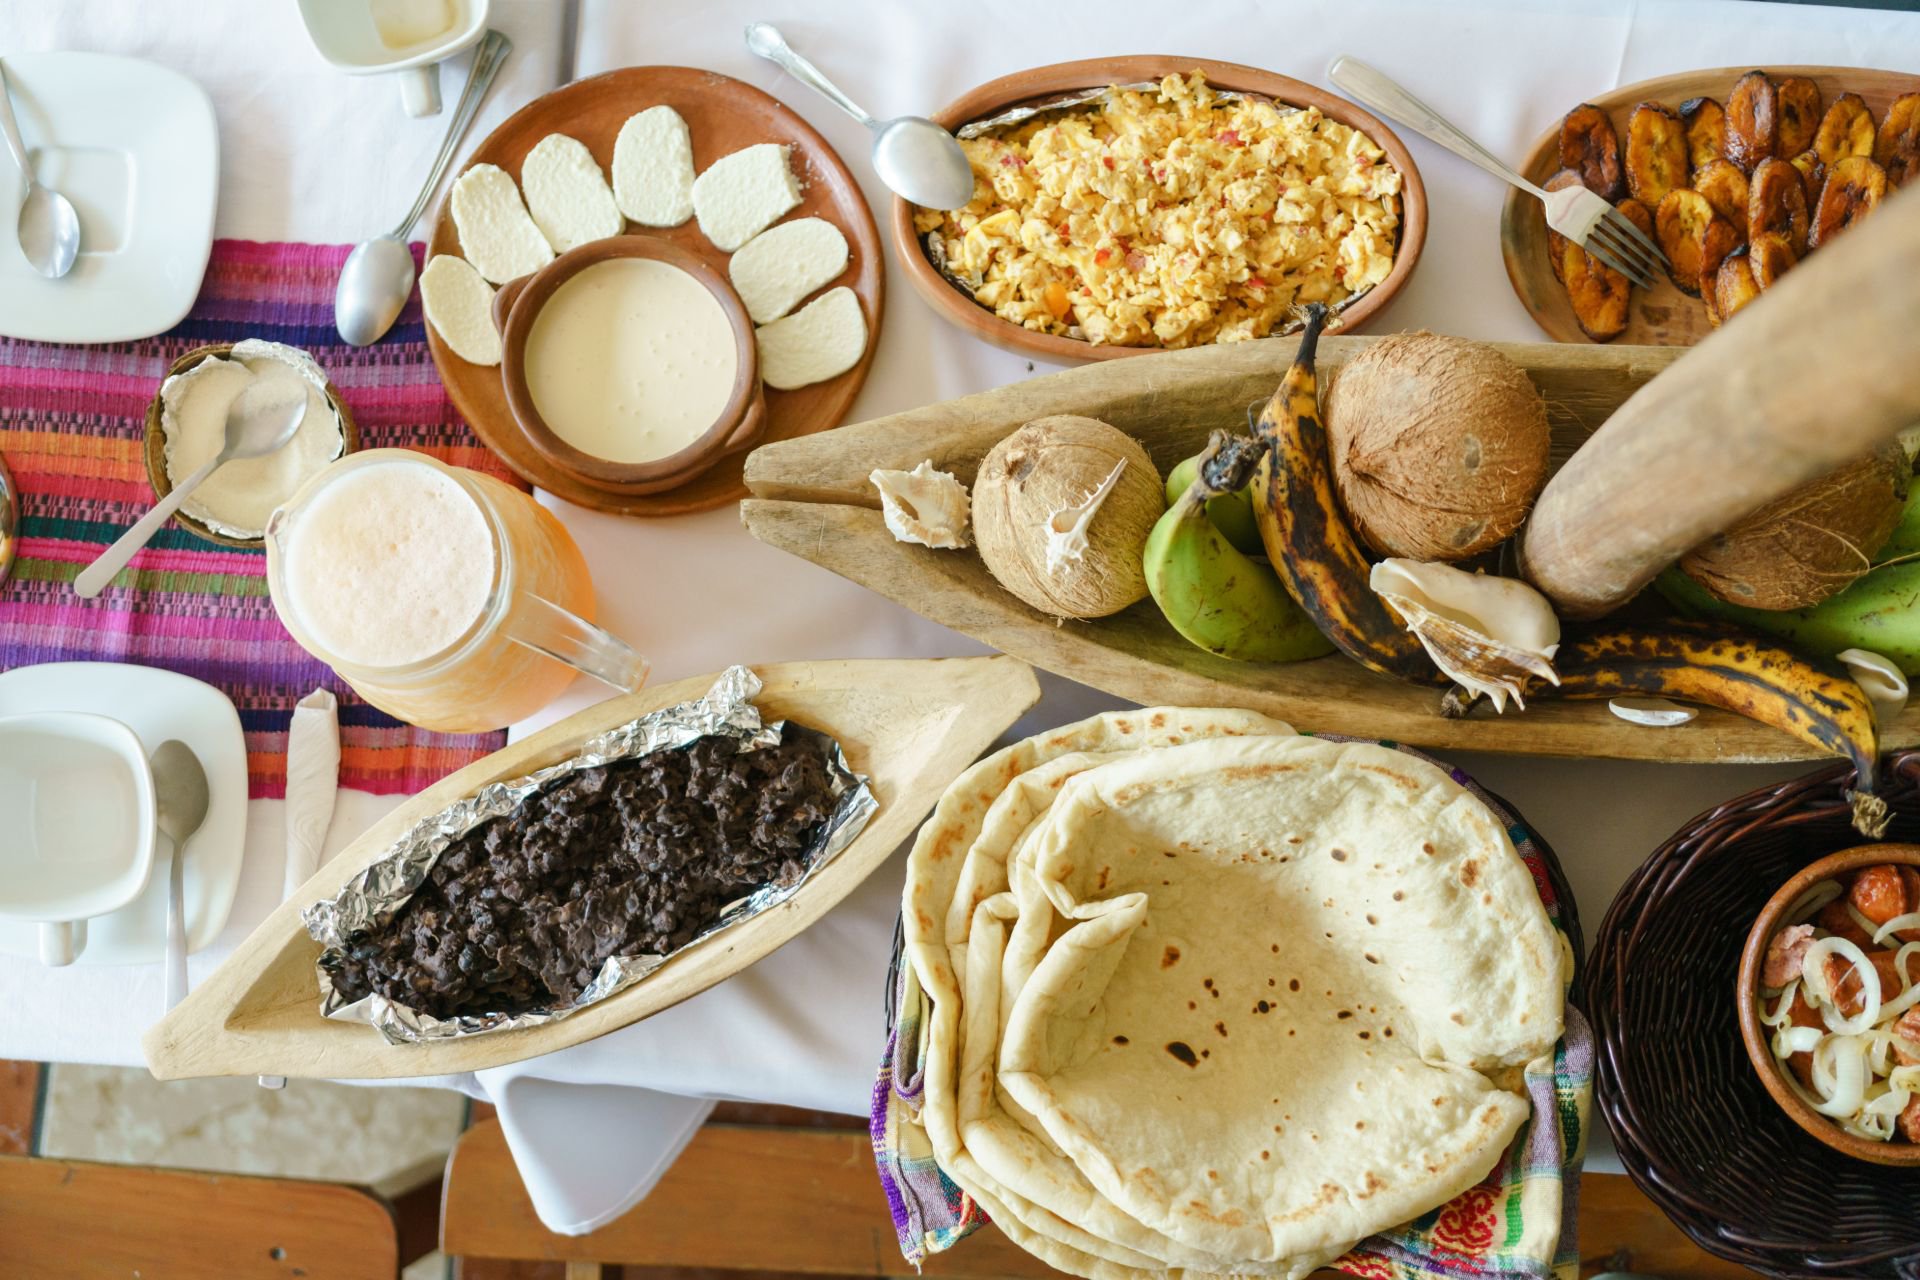 Desayuno-Guatemalteco-El-Estor-Cafeteria-Deli-Max-Chef-Luis-Carillo-Izabal-1.jpg